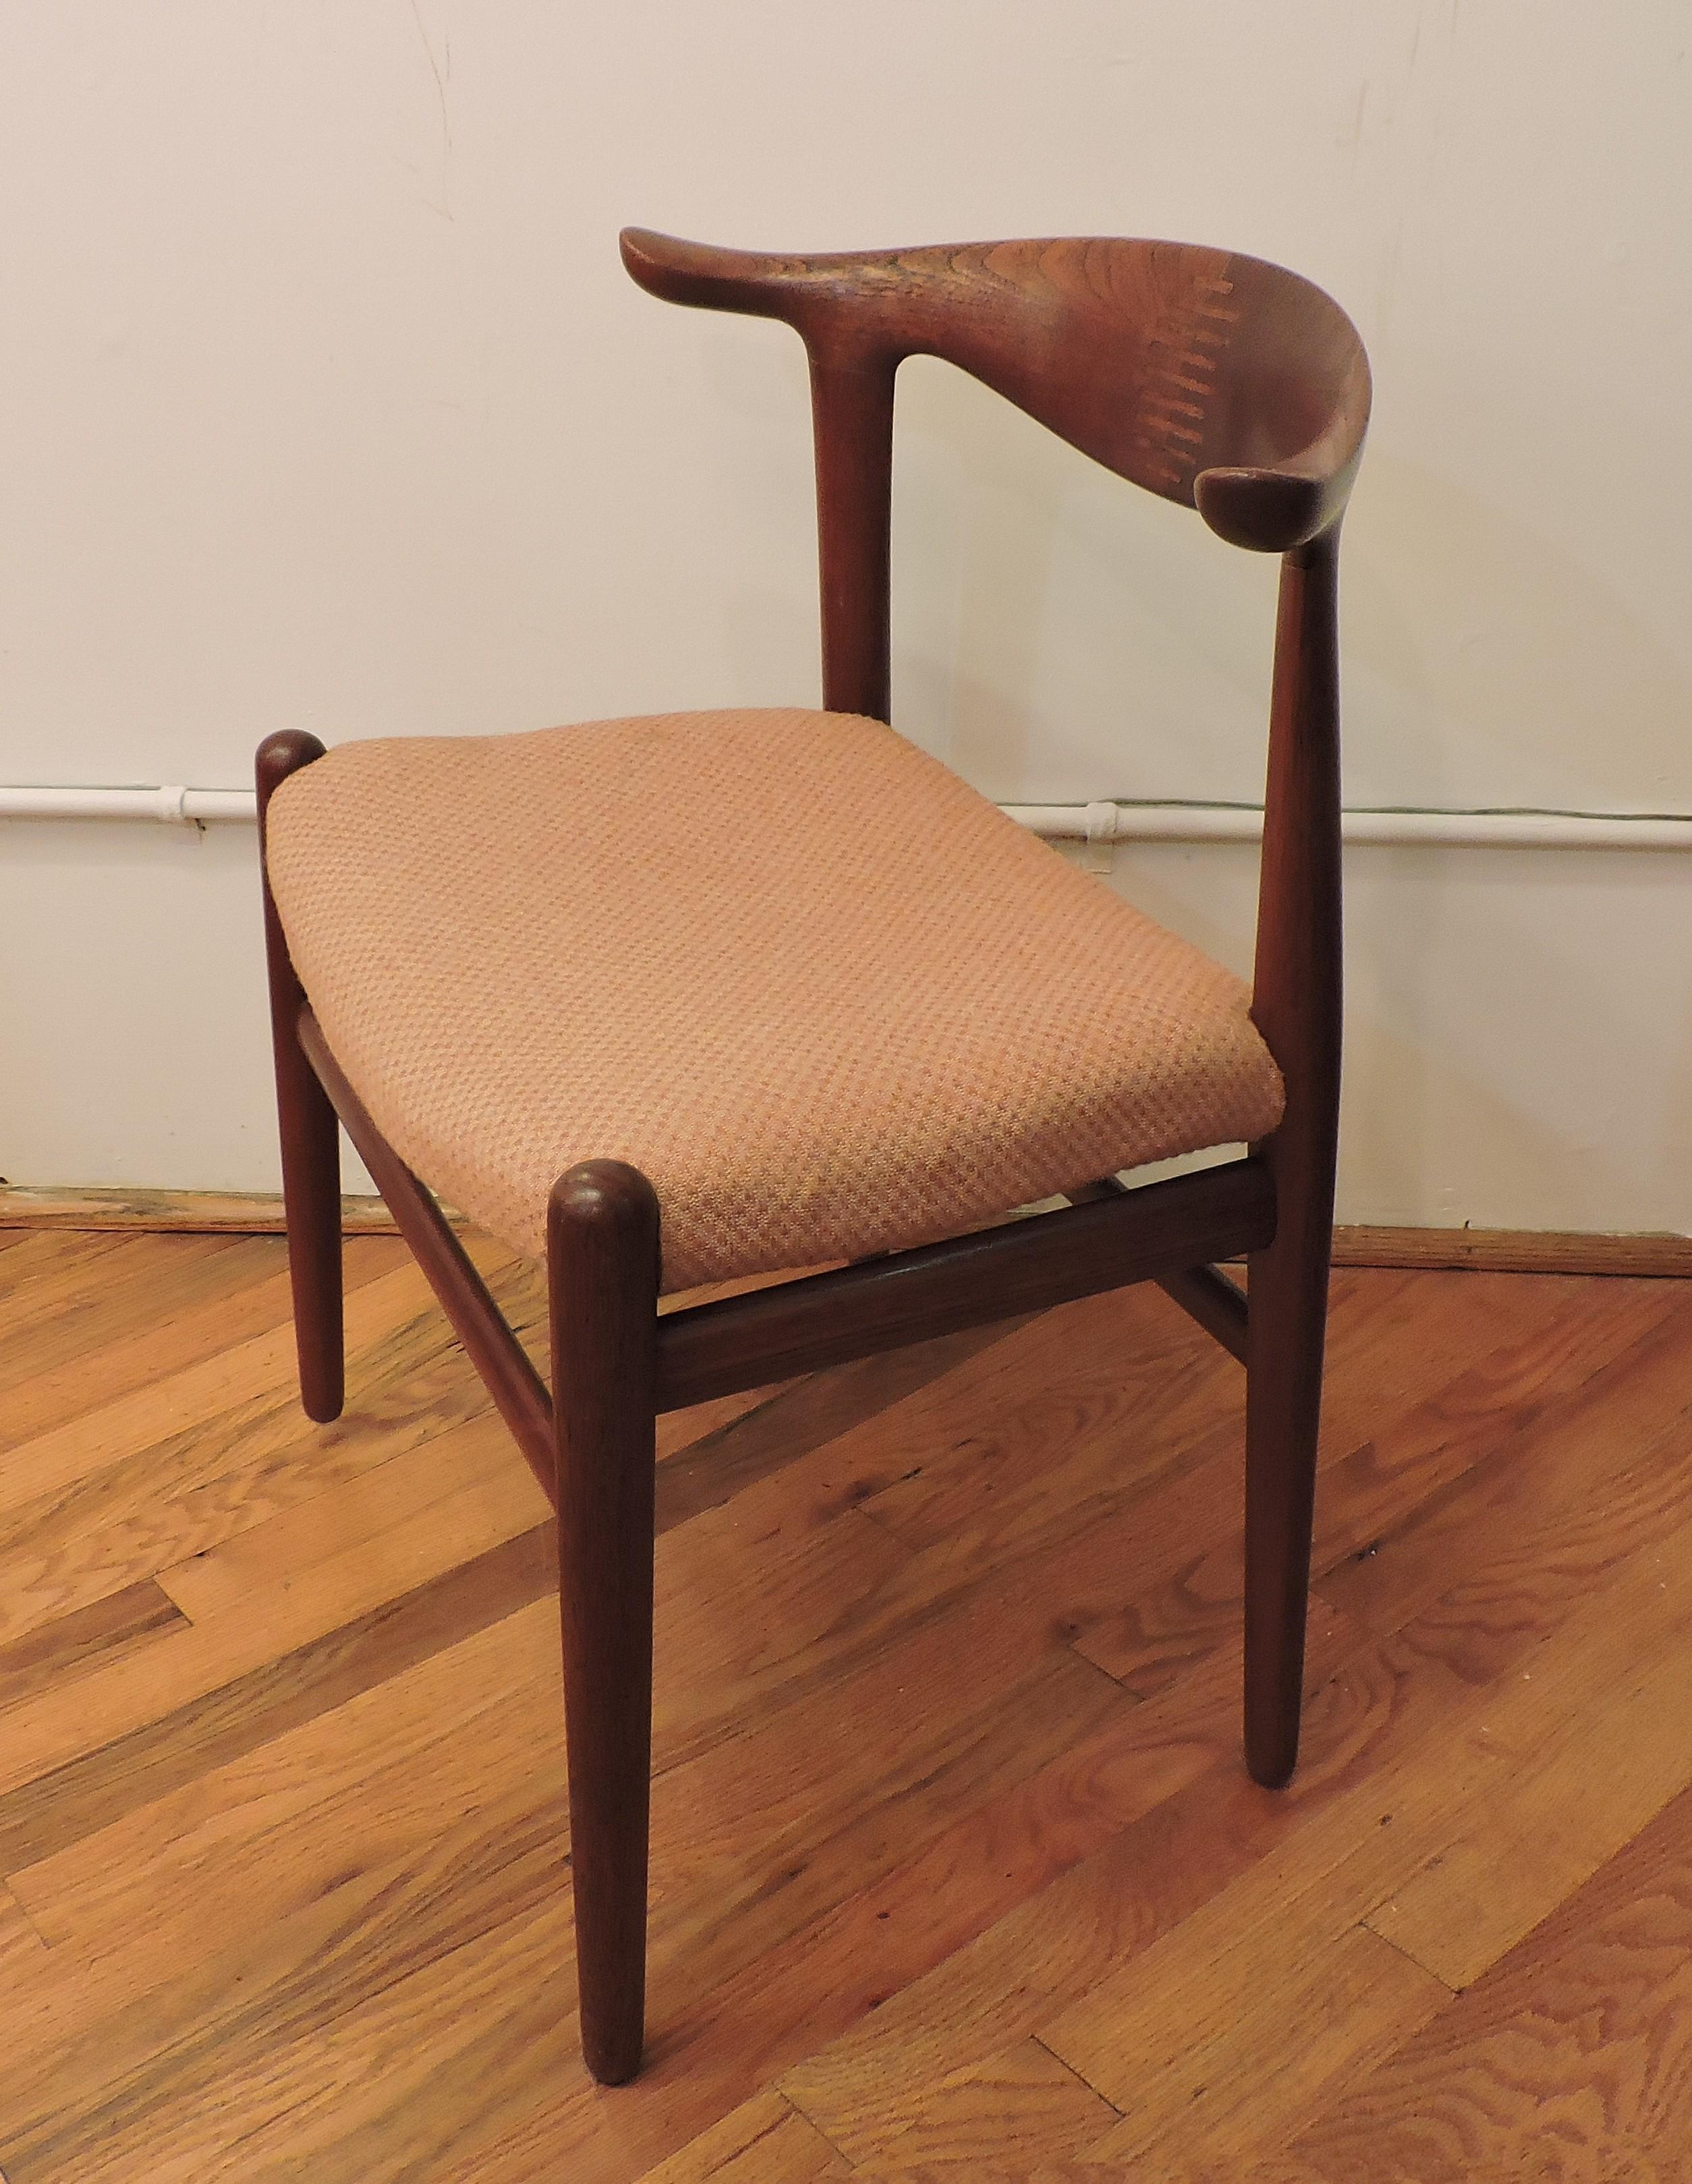 Kuhhornstuhl:: Modell JH 505:: entworfen von Hans Wegner und hergestellt in Dänemark von Johannes Hansen. Dieser skulpturale und kompakte Stuhl ist aus massivem Teakholz gefertigt und hat eine gepolsterte Sitzfläche.